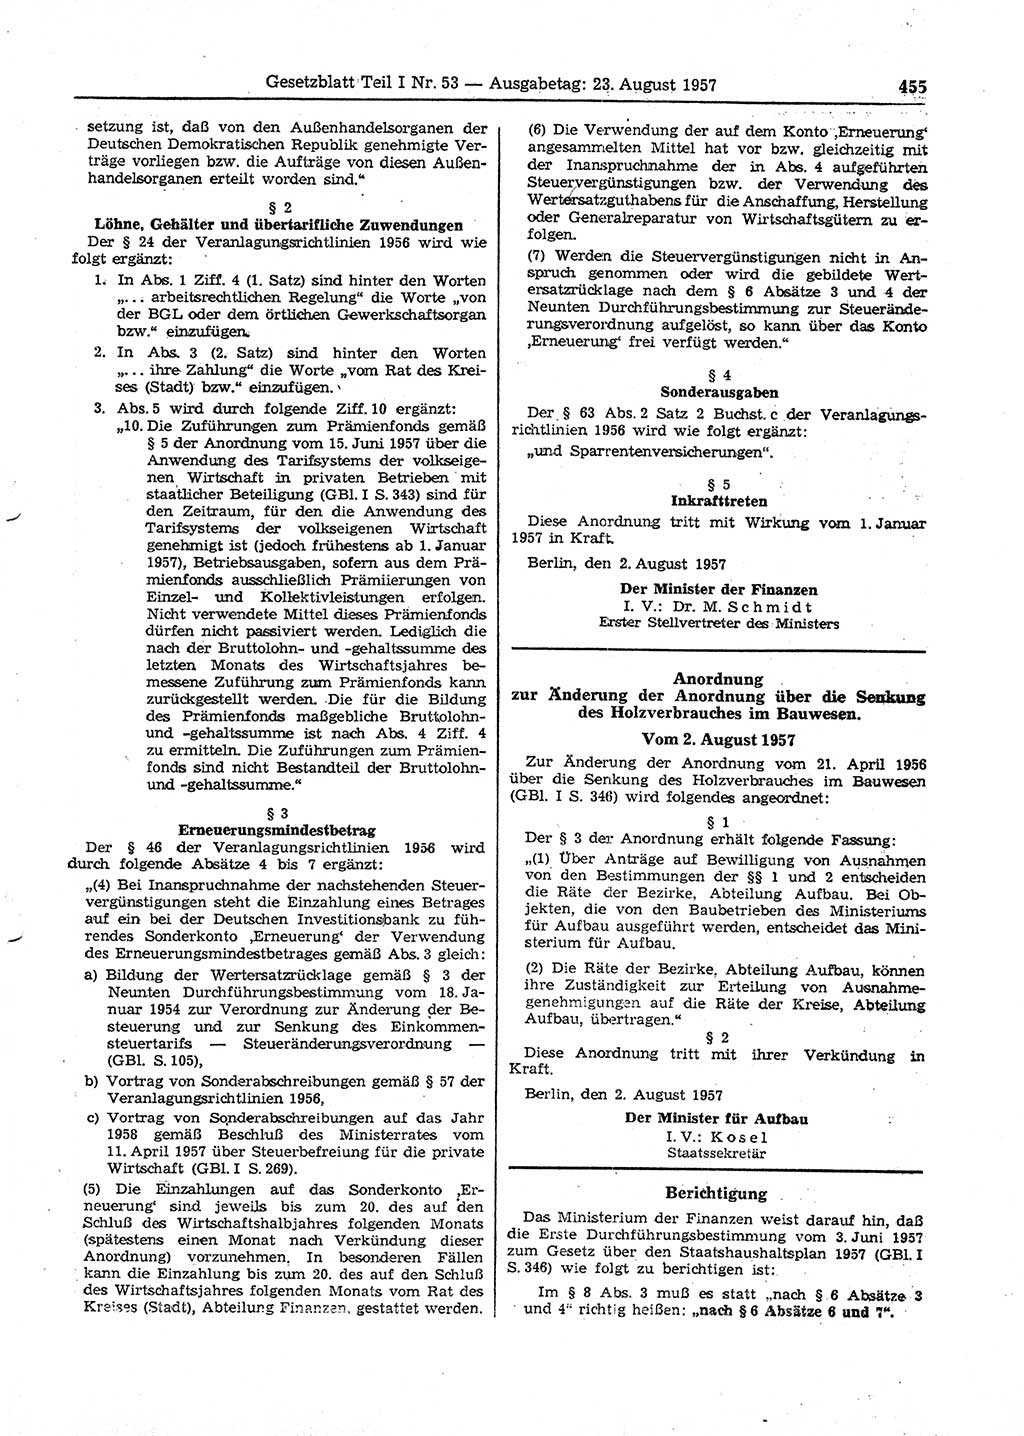 Gesetzblatt (GBl.) der Deutschen Demokratischen Republik (DDR) Teil Ⅰ 1957, Seite 455 (GBl. DDR Ⅰ 1957, S. 455)